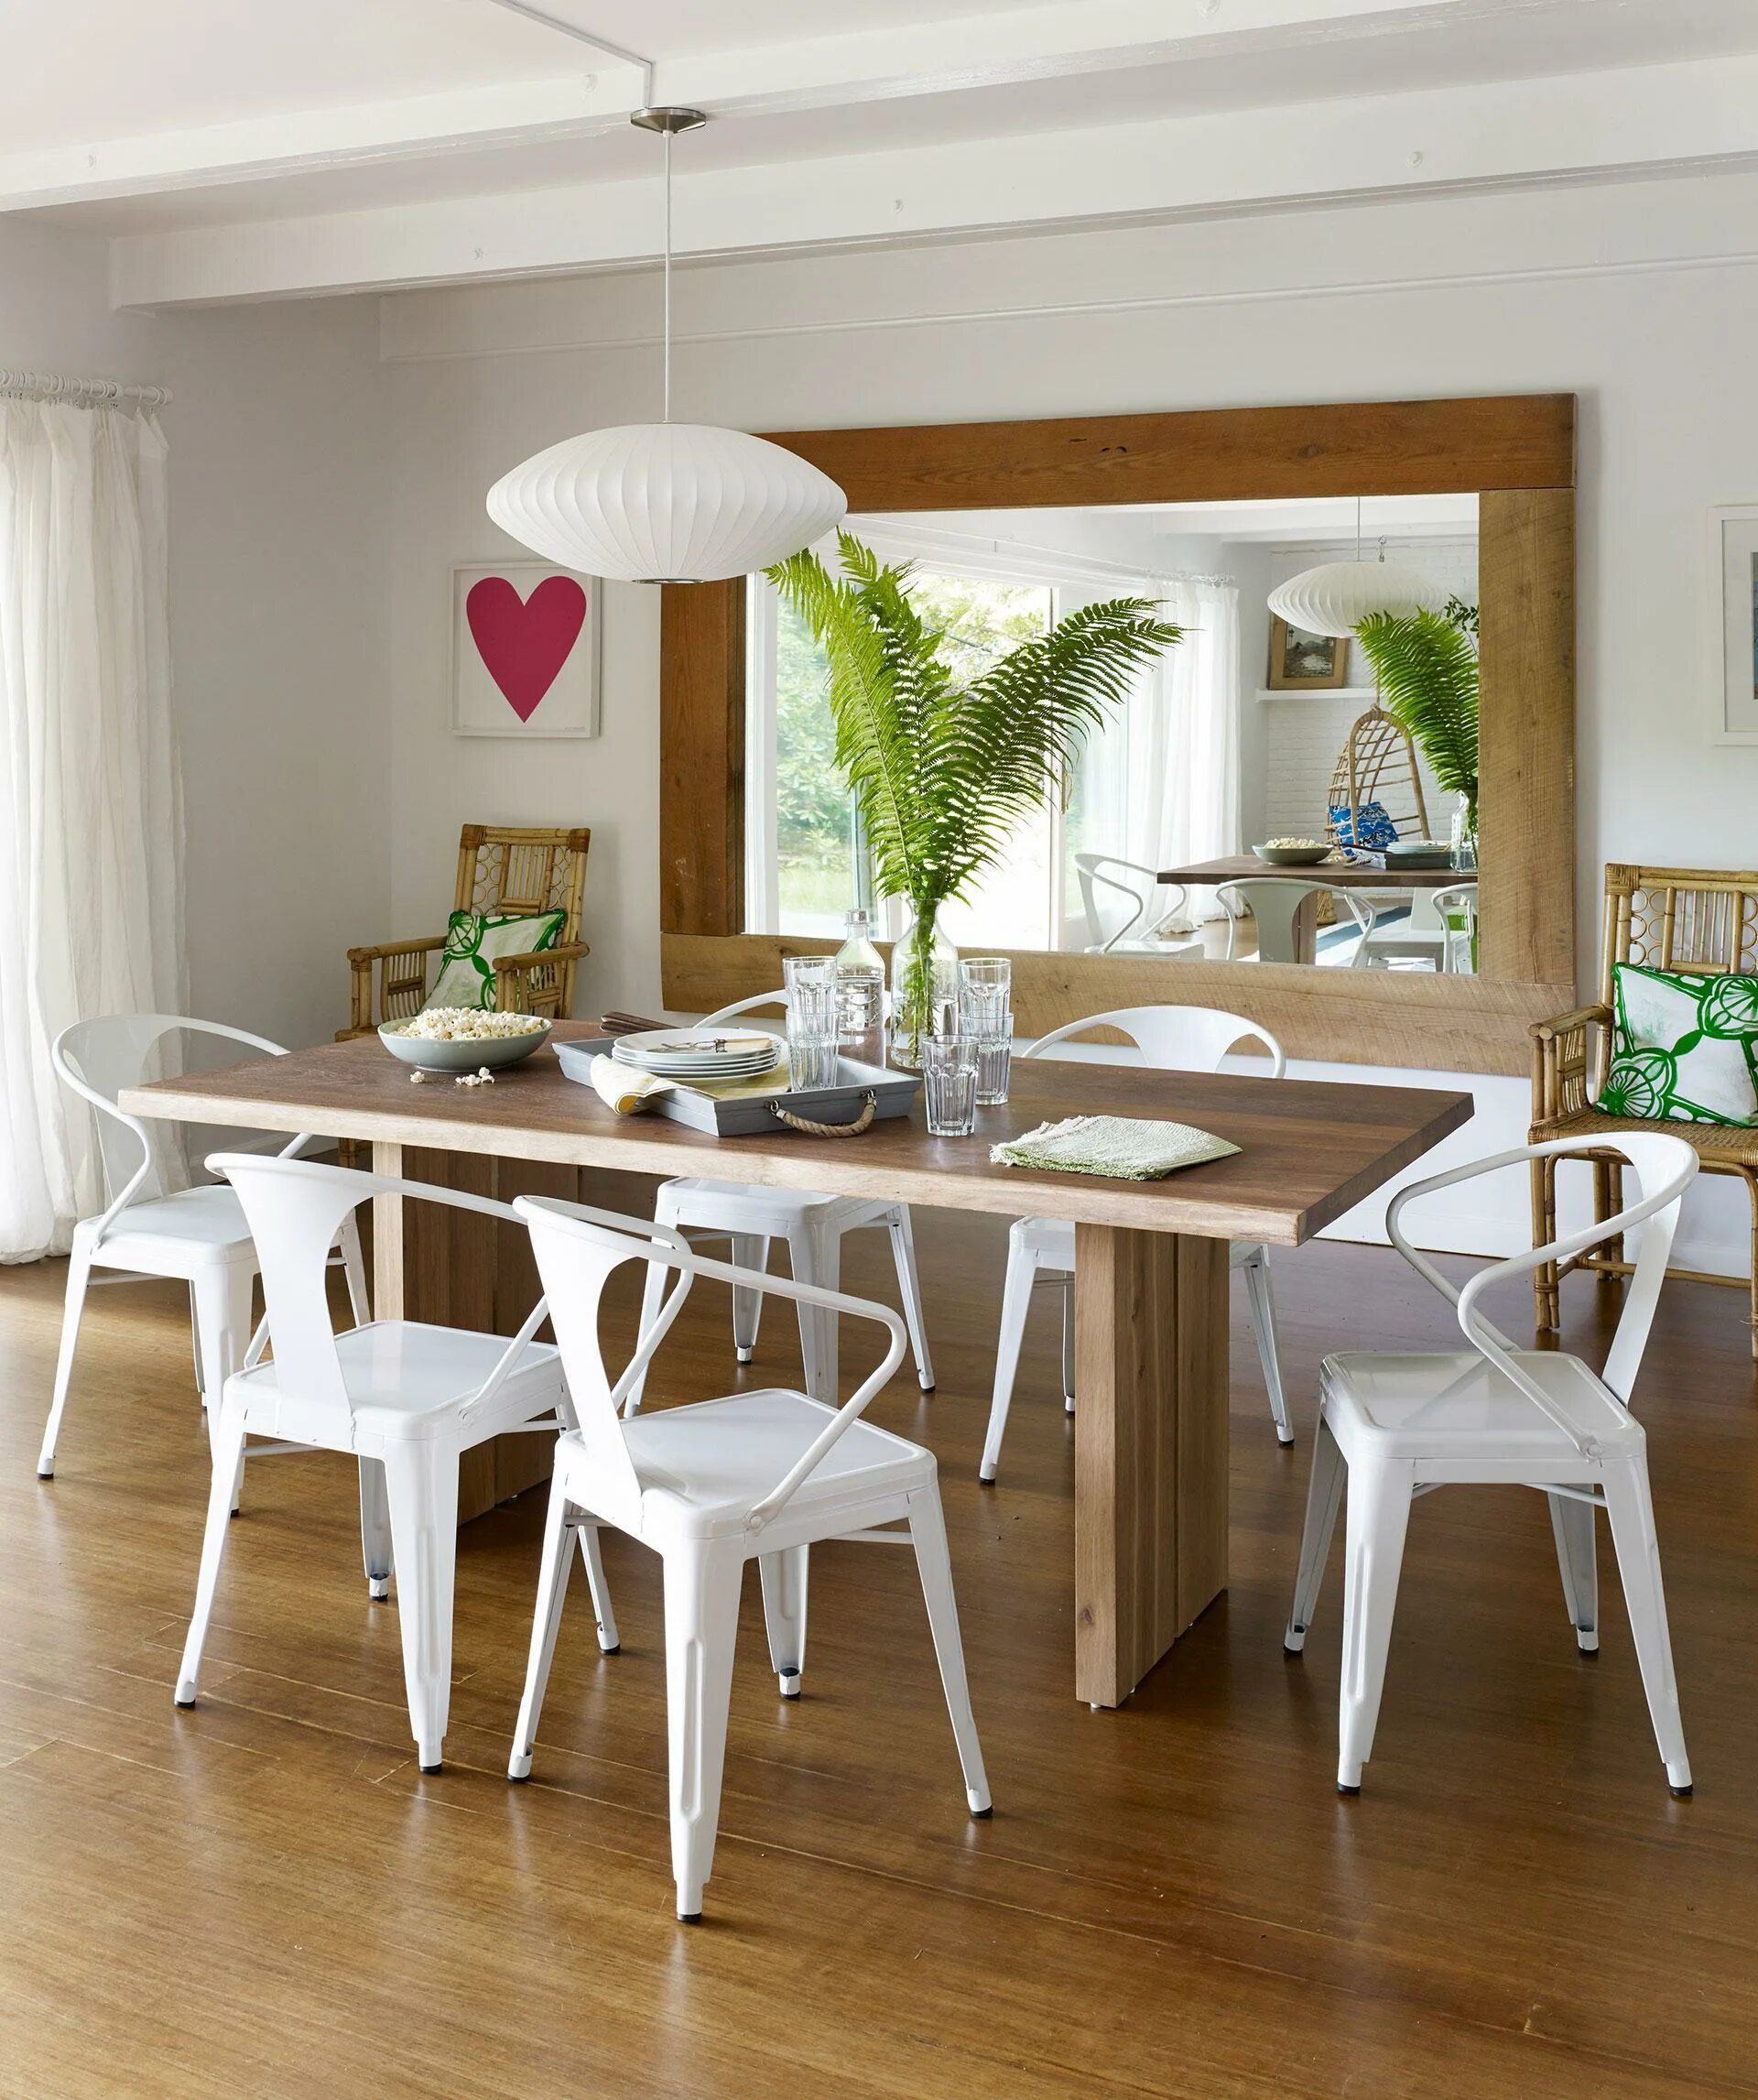 Bedroom dining room. Красивый обеденный стол. Кухня столовая. Красивые кухни столовые. Дизайнерские кухонные столы.